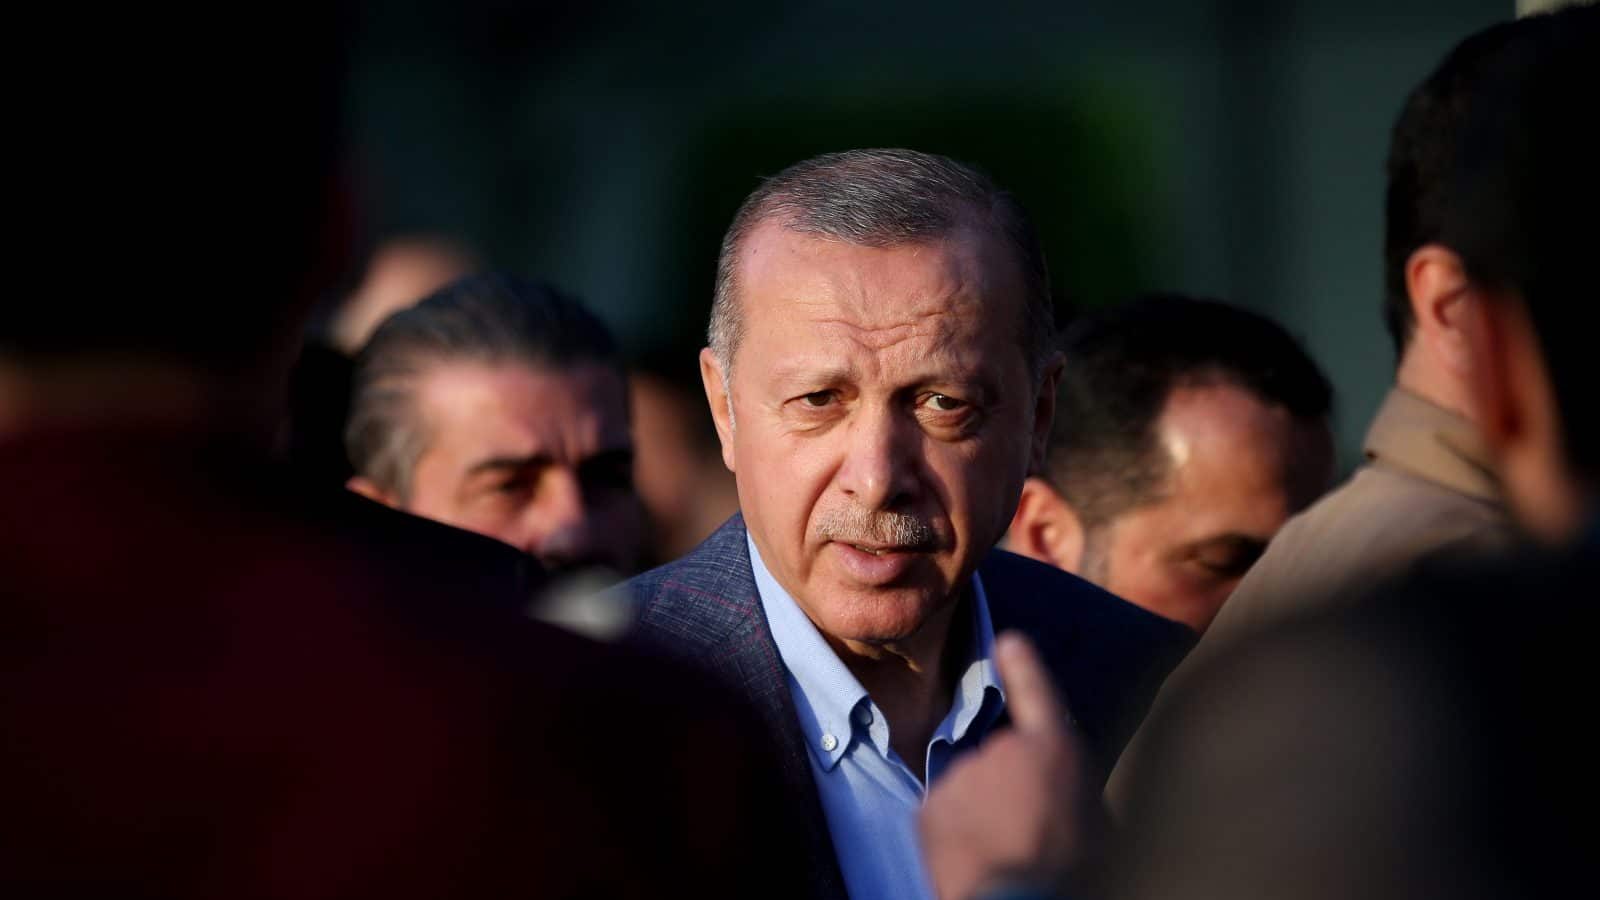 Ερντογάν δηλώσεις: “Δώσαμε ηχηρή απάντηση στην Ελλάδα” – Τι συζήτησε με τη Μέρκελ